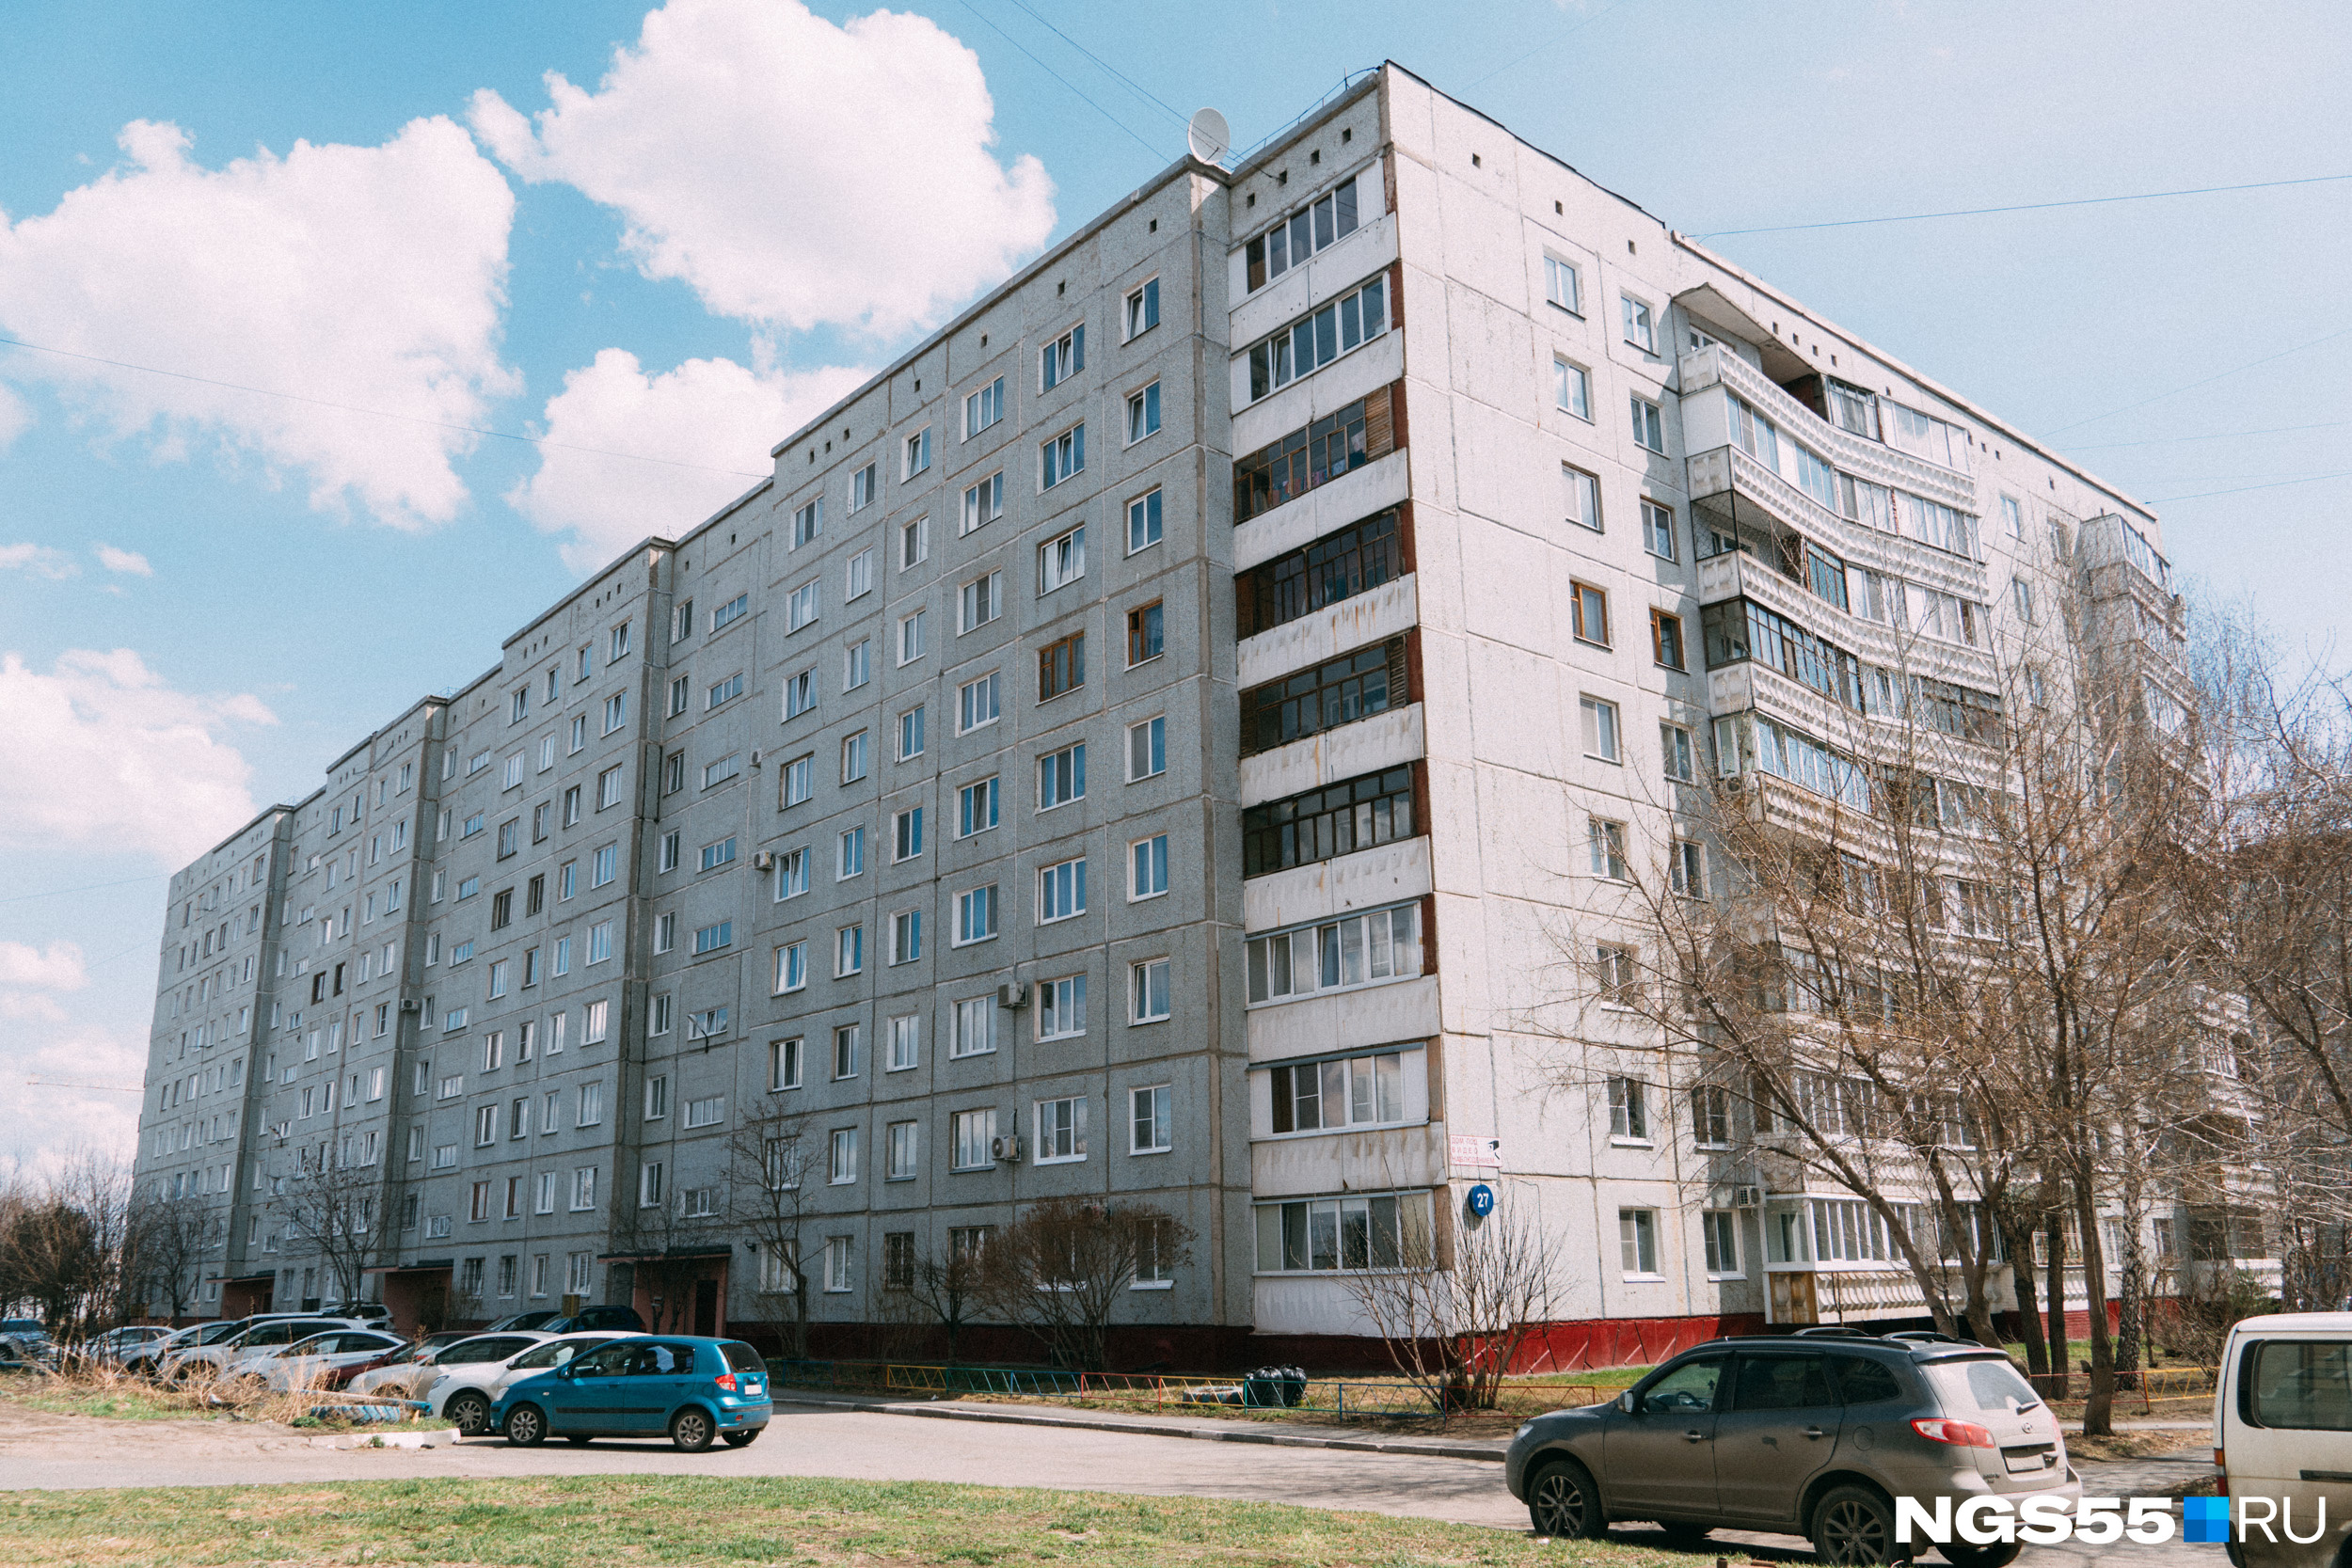 Квартира площадью 80,1 кв. м, которая принадлежала семье Рябовых, находится на третьем этаже дома по улице Крупской